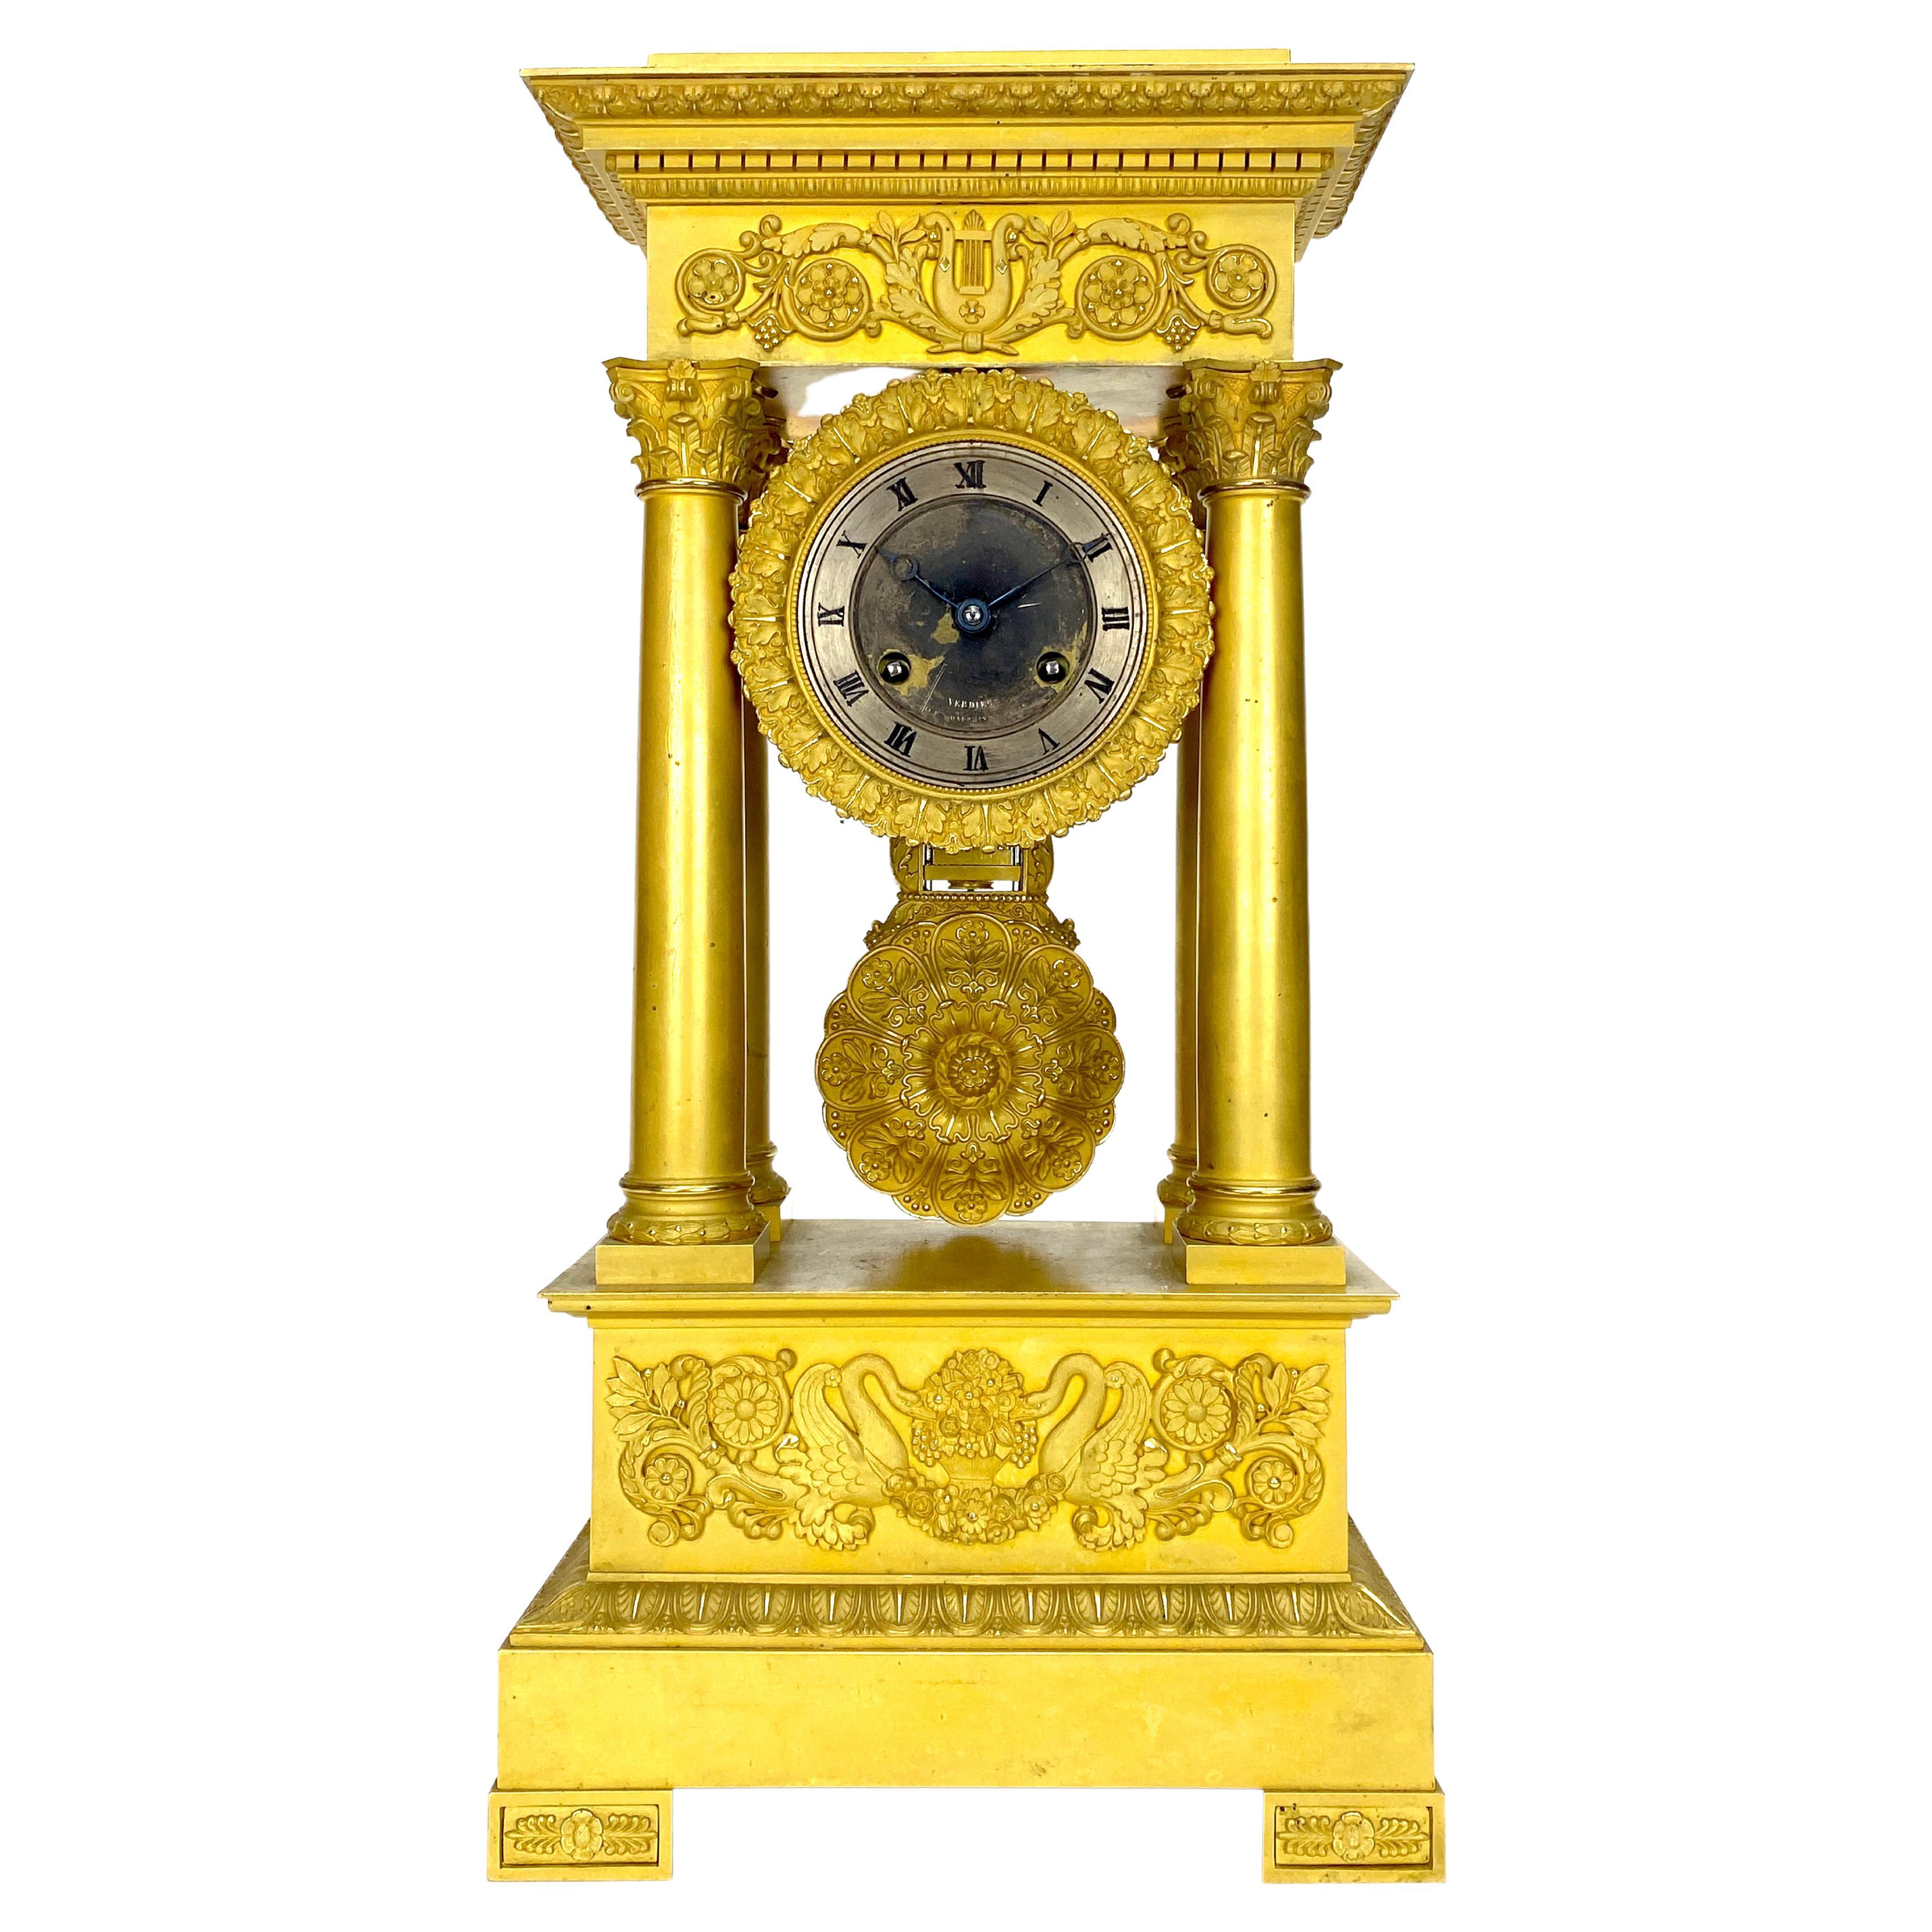 1880 Ancienne horloge de cheminée française en bronze doré avec double cygne.

MOUVEMENT : Mécanisme de remontage de 8 jours

FONCTION : heure avec sonnerie de la demi-heure et de l'heure

TAILLE : 19 